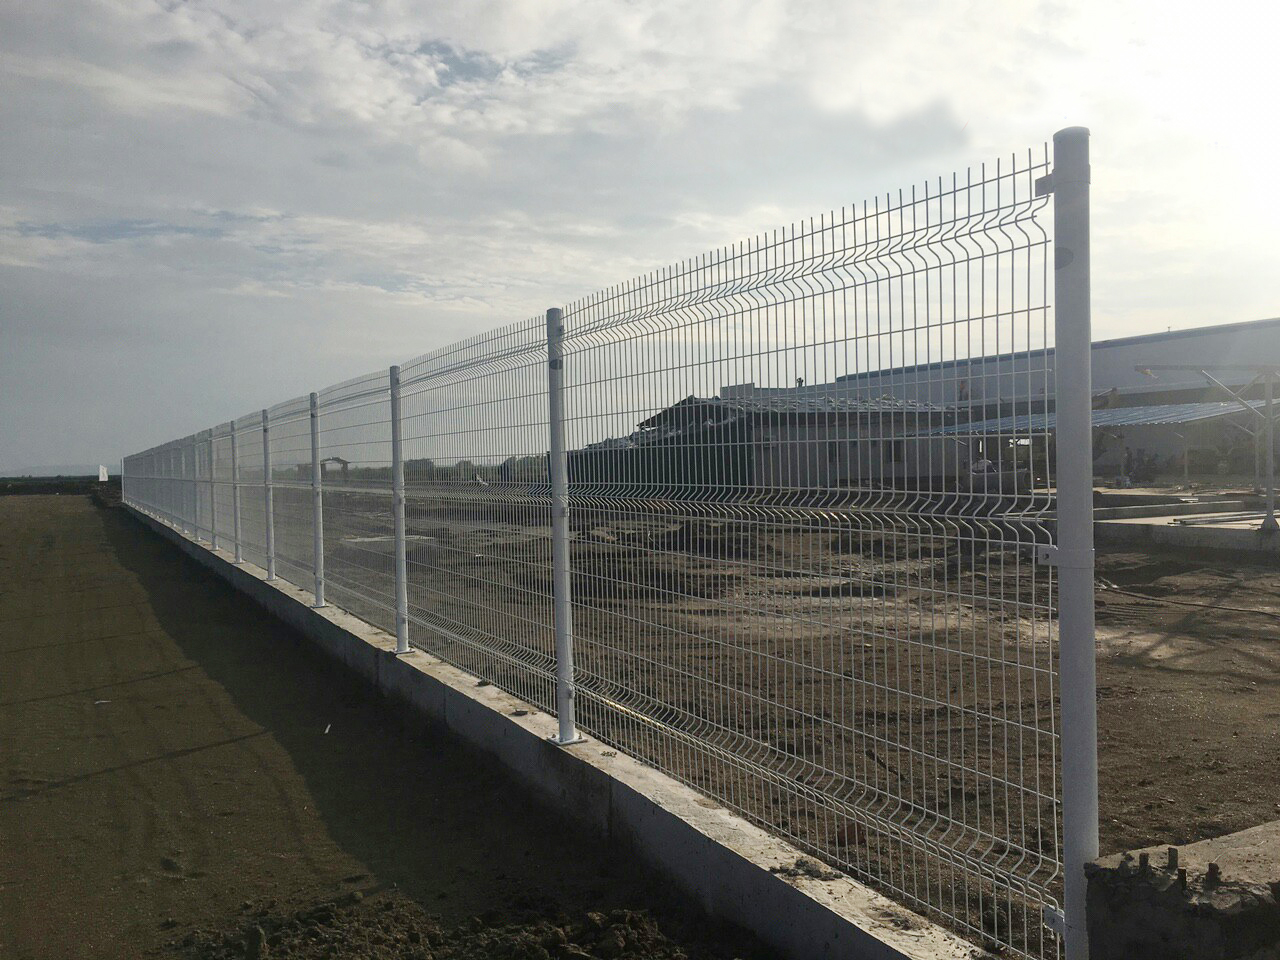 Hàng rào bảo vệ khu công nghiệp, lưới thép mạ kẽm, lLàm hàng rào khu công nghiệp ở Kv HCM được sản xuất trên dây truyền tiên tiến hiện đại được nhập khẩu từ Châu Âu.